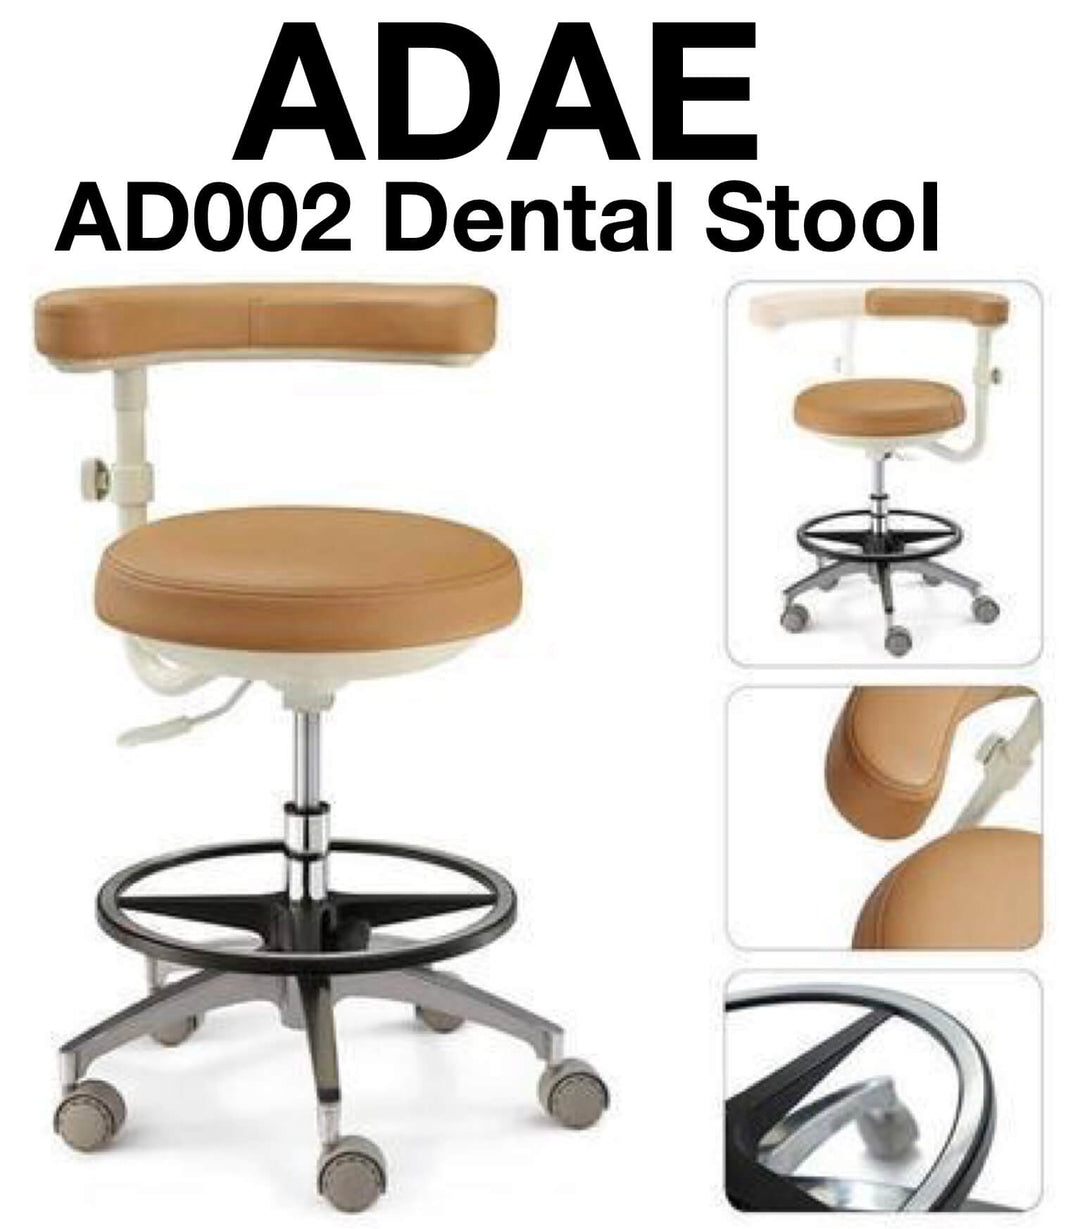 ADAE AD002 dental stool - ADAE Dental Online Store